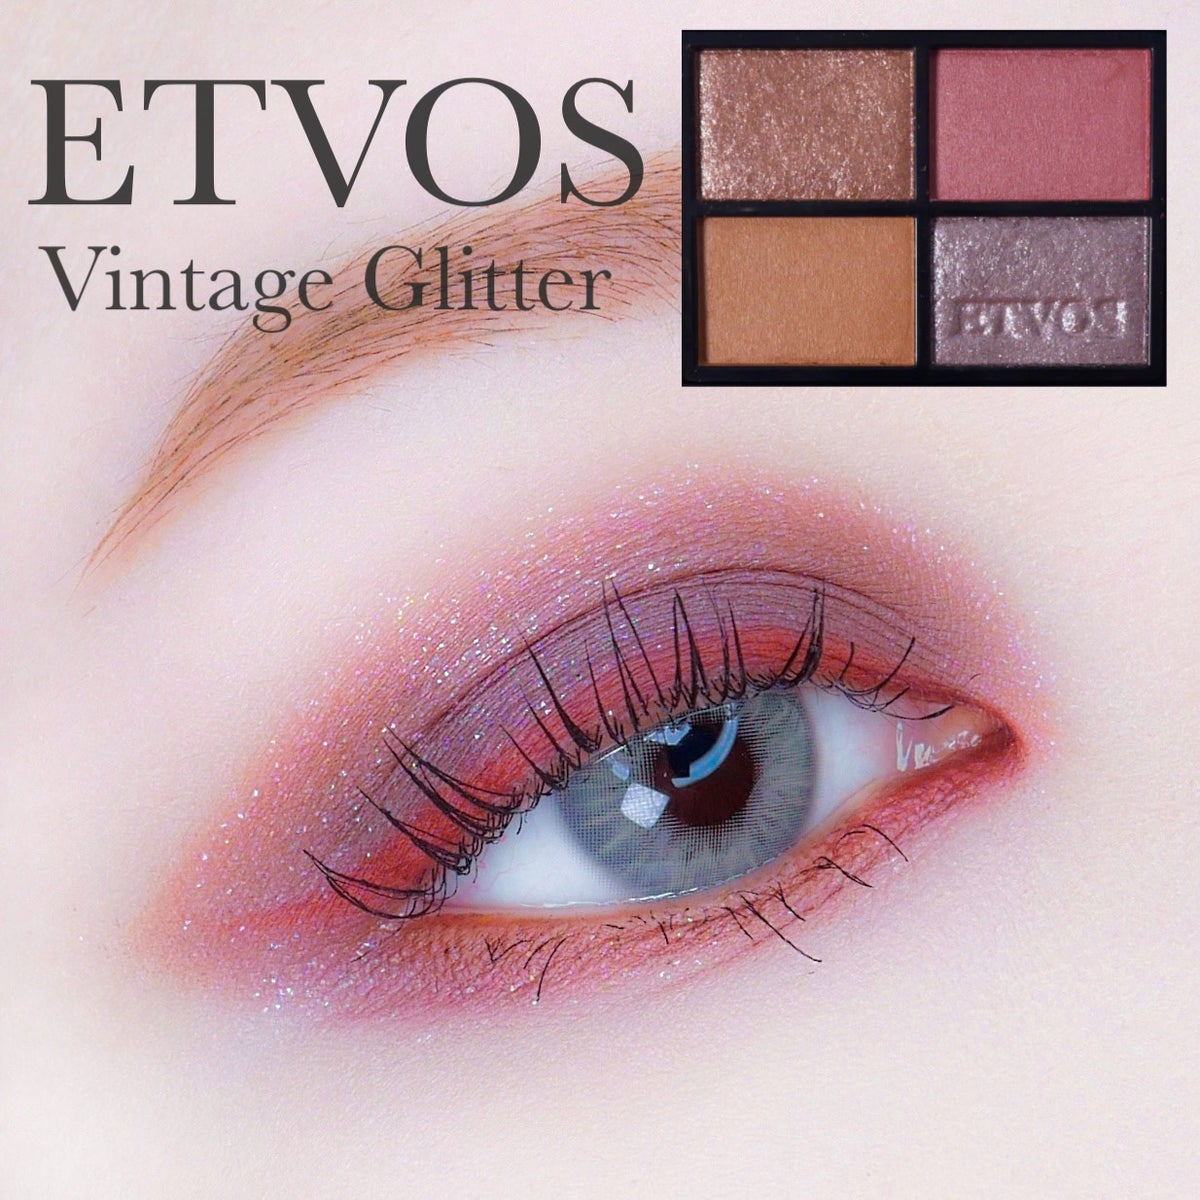 ETVOS ミネラルクラッシィシャドー 限定色 ヴィンテージグリッター